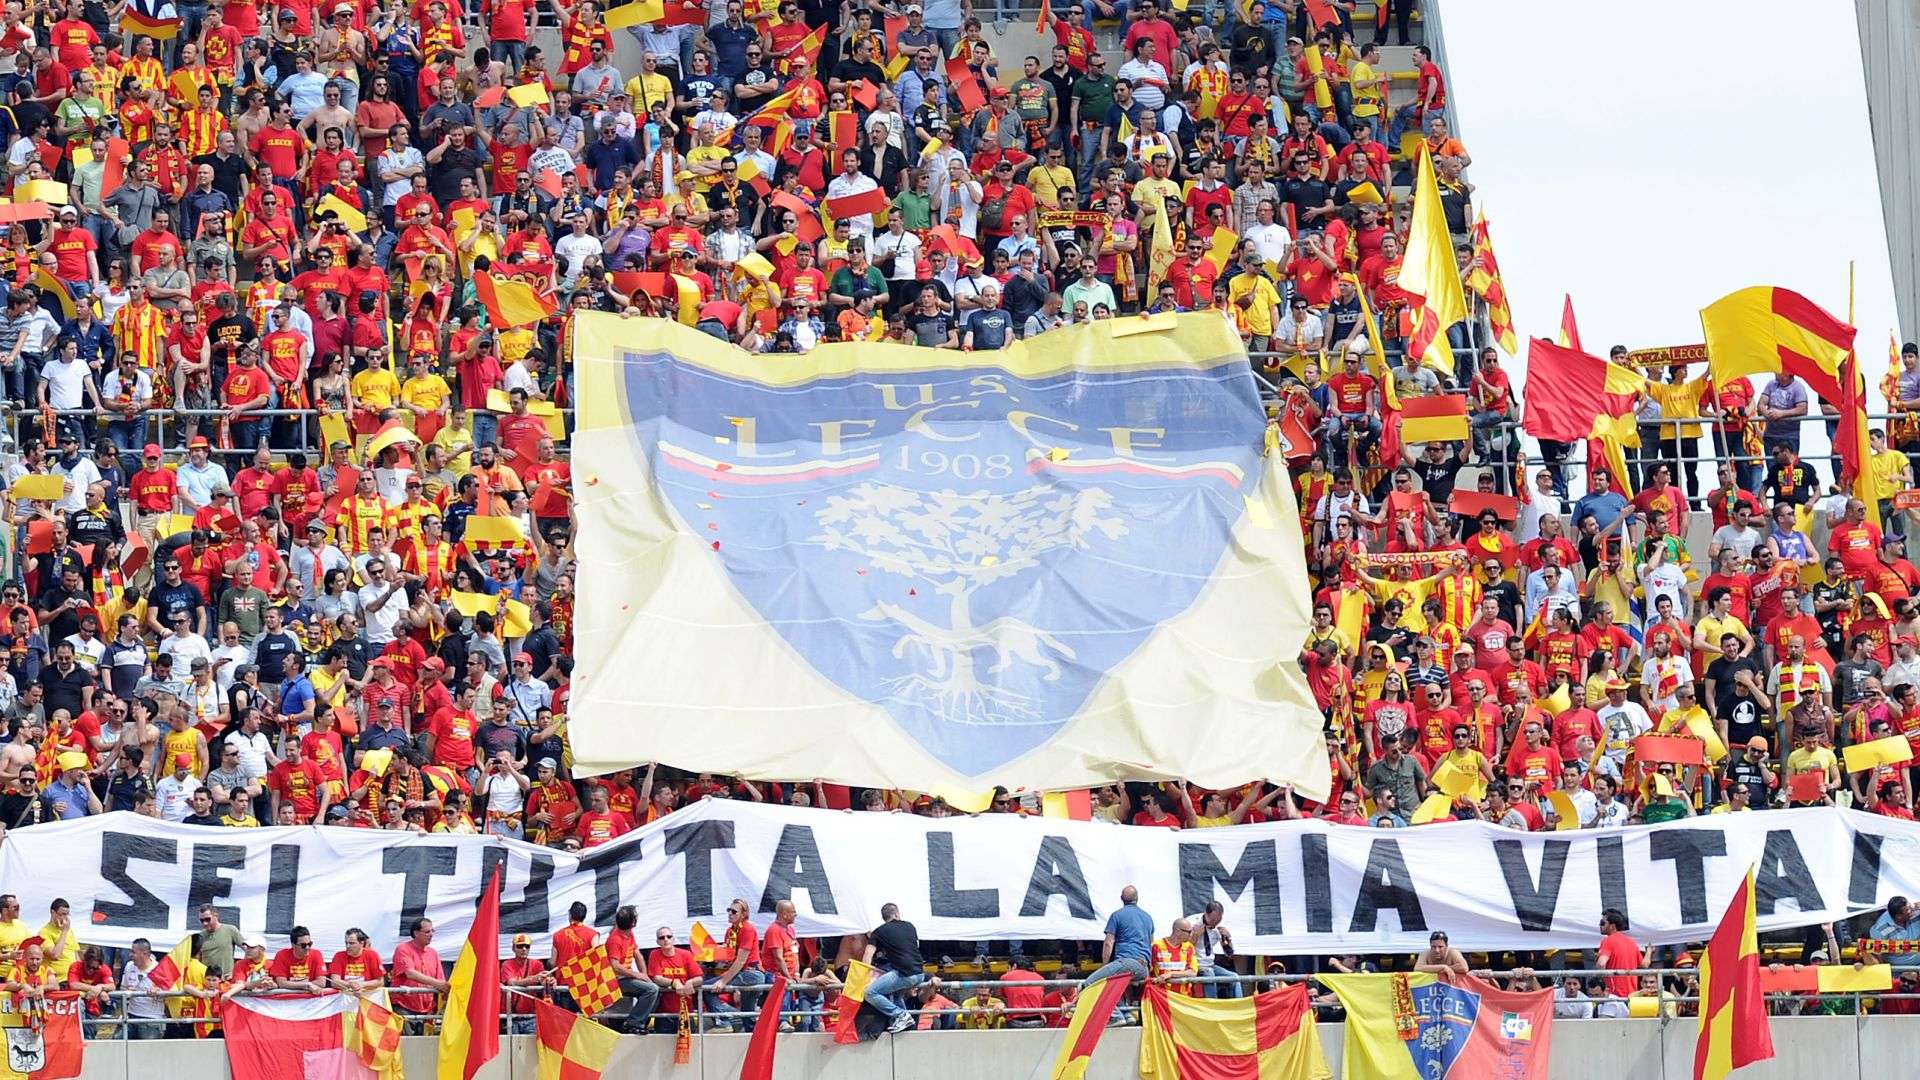 Lecce fans